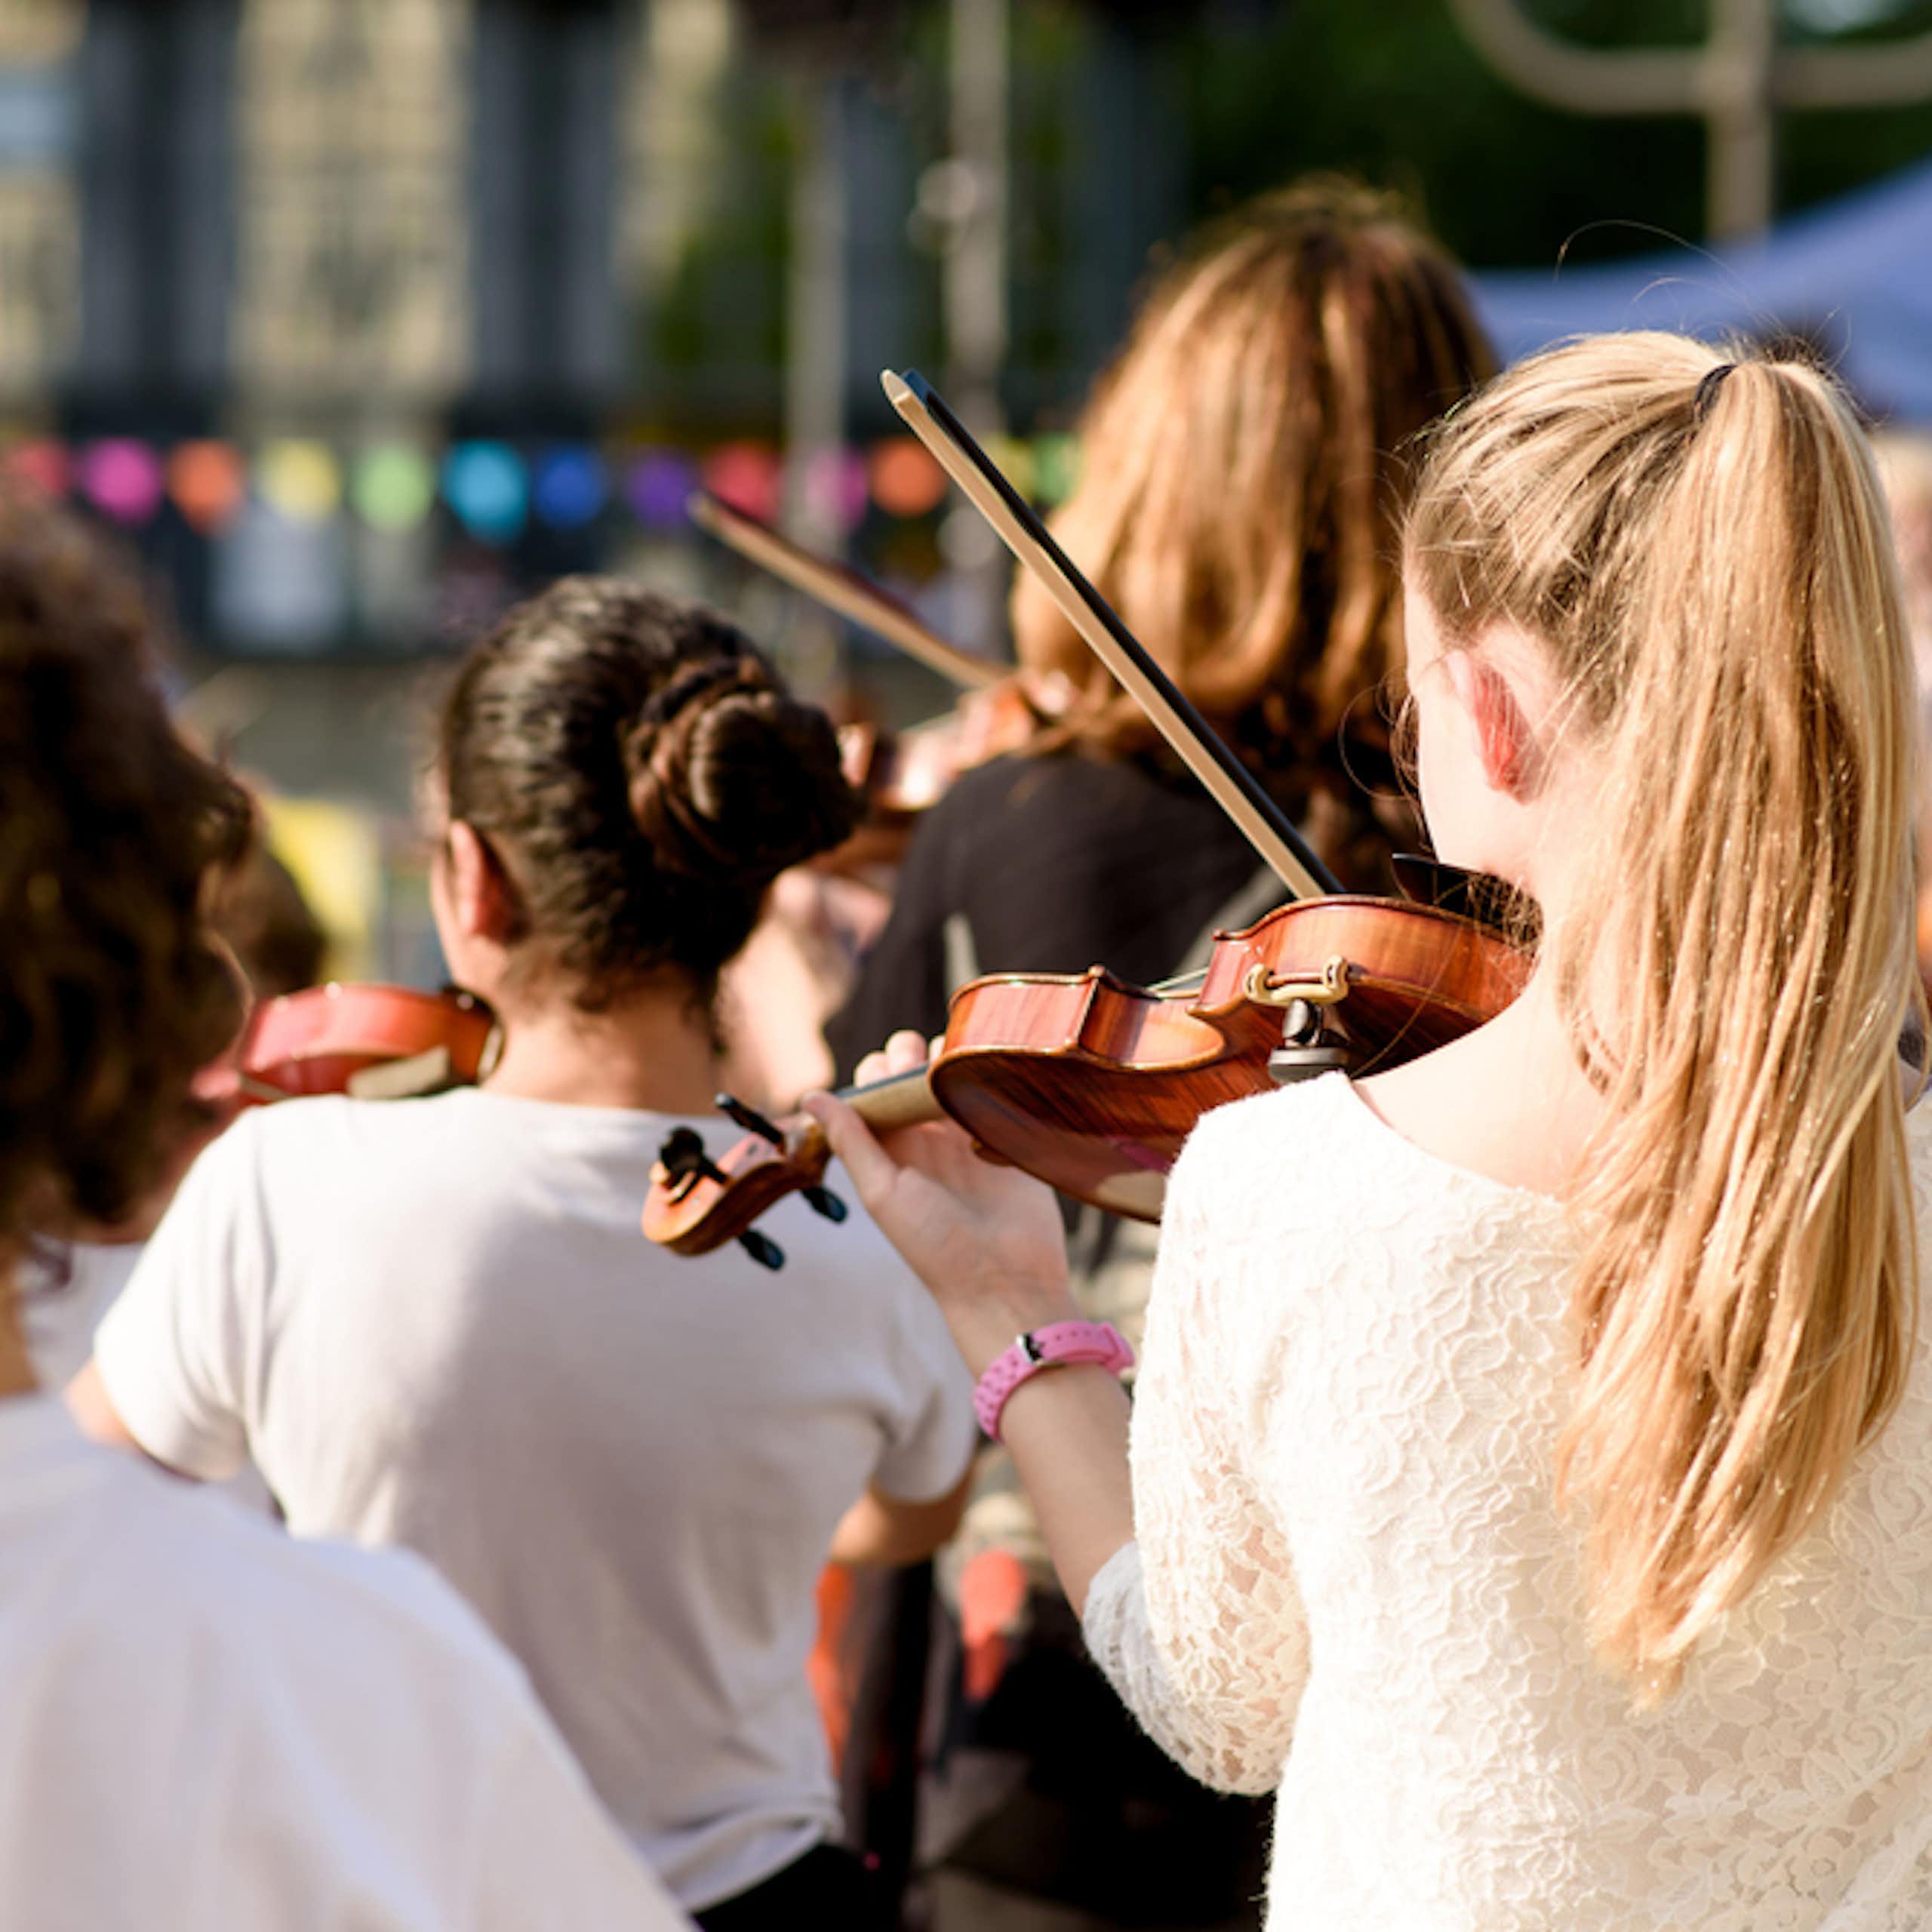 Les orchestres d’enfants, une piste pour démocratiser la pratique musicale ?